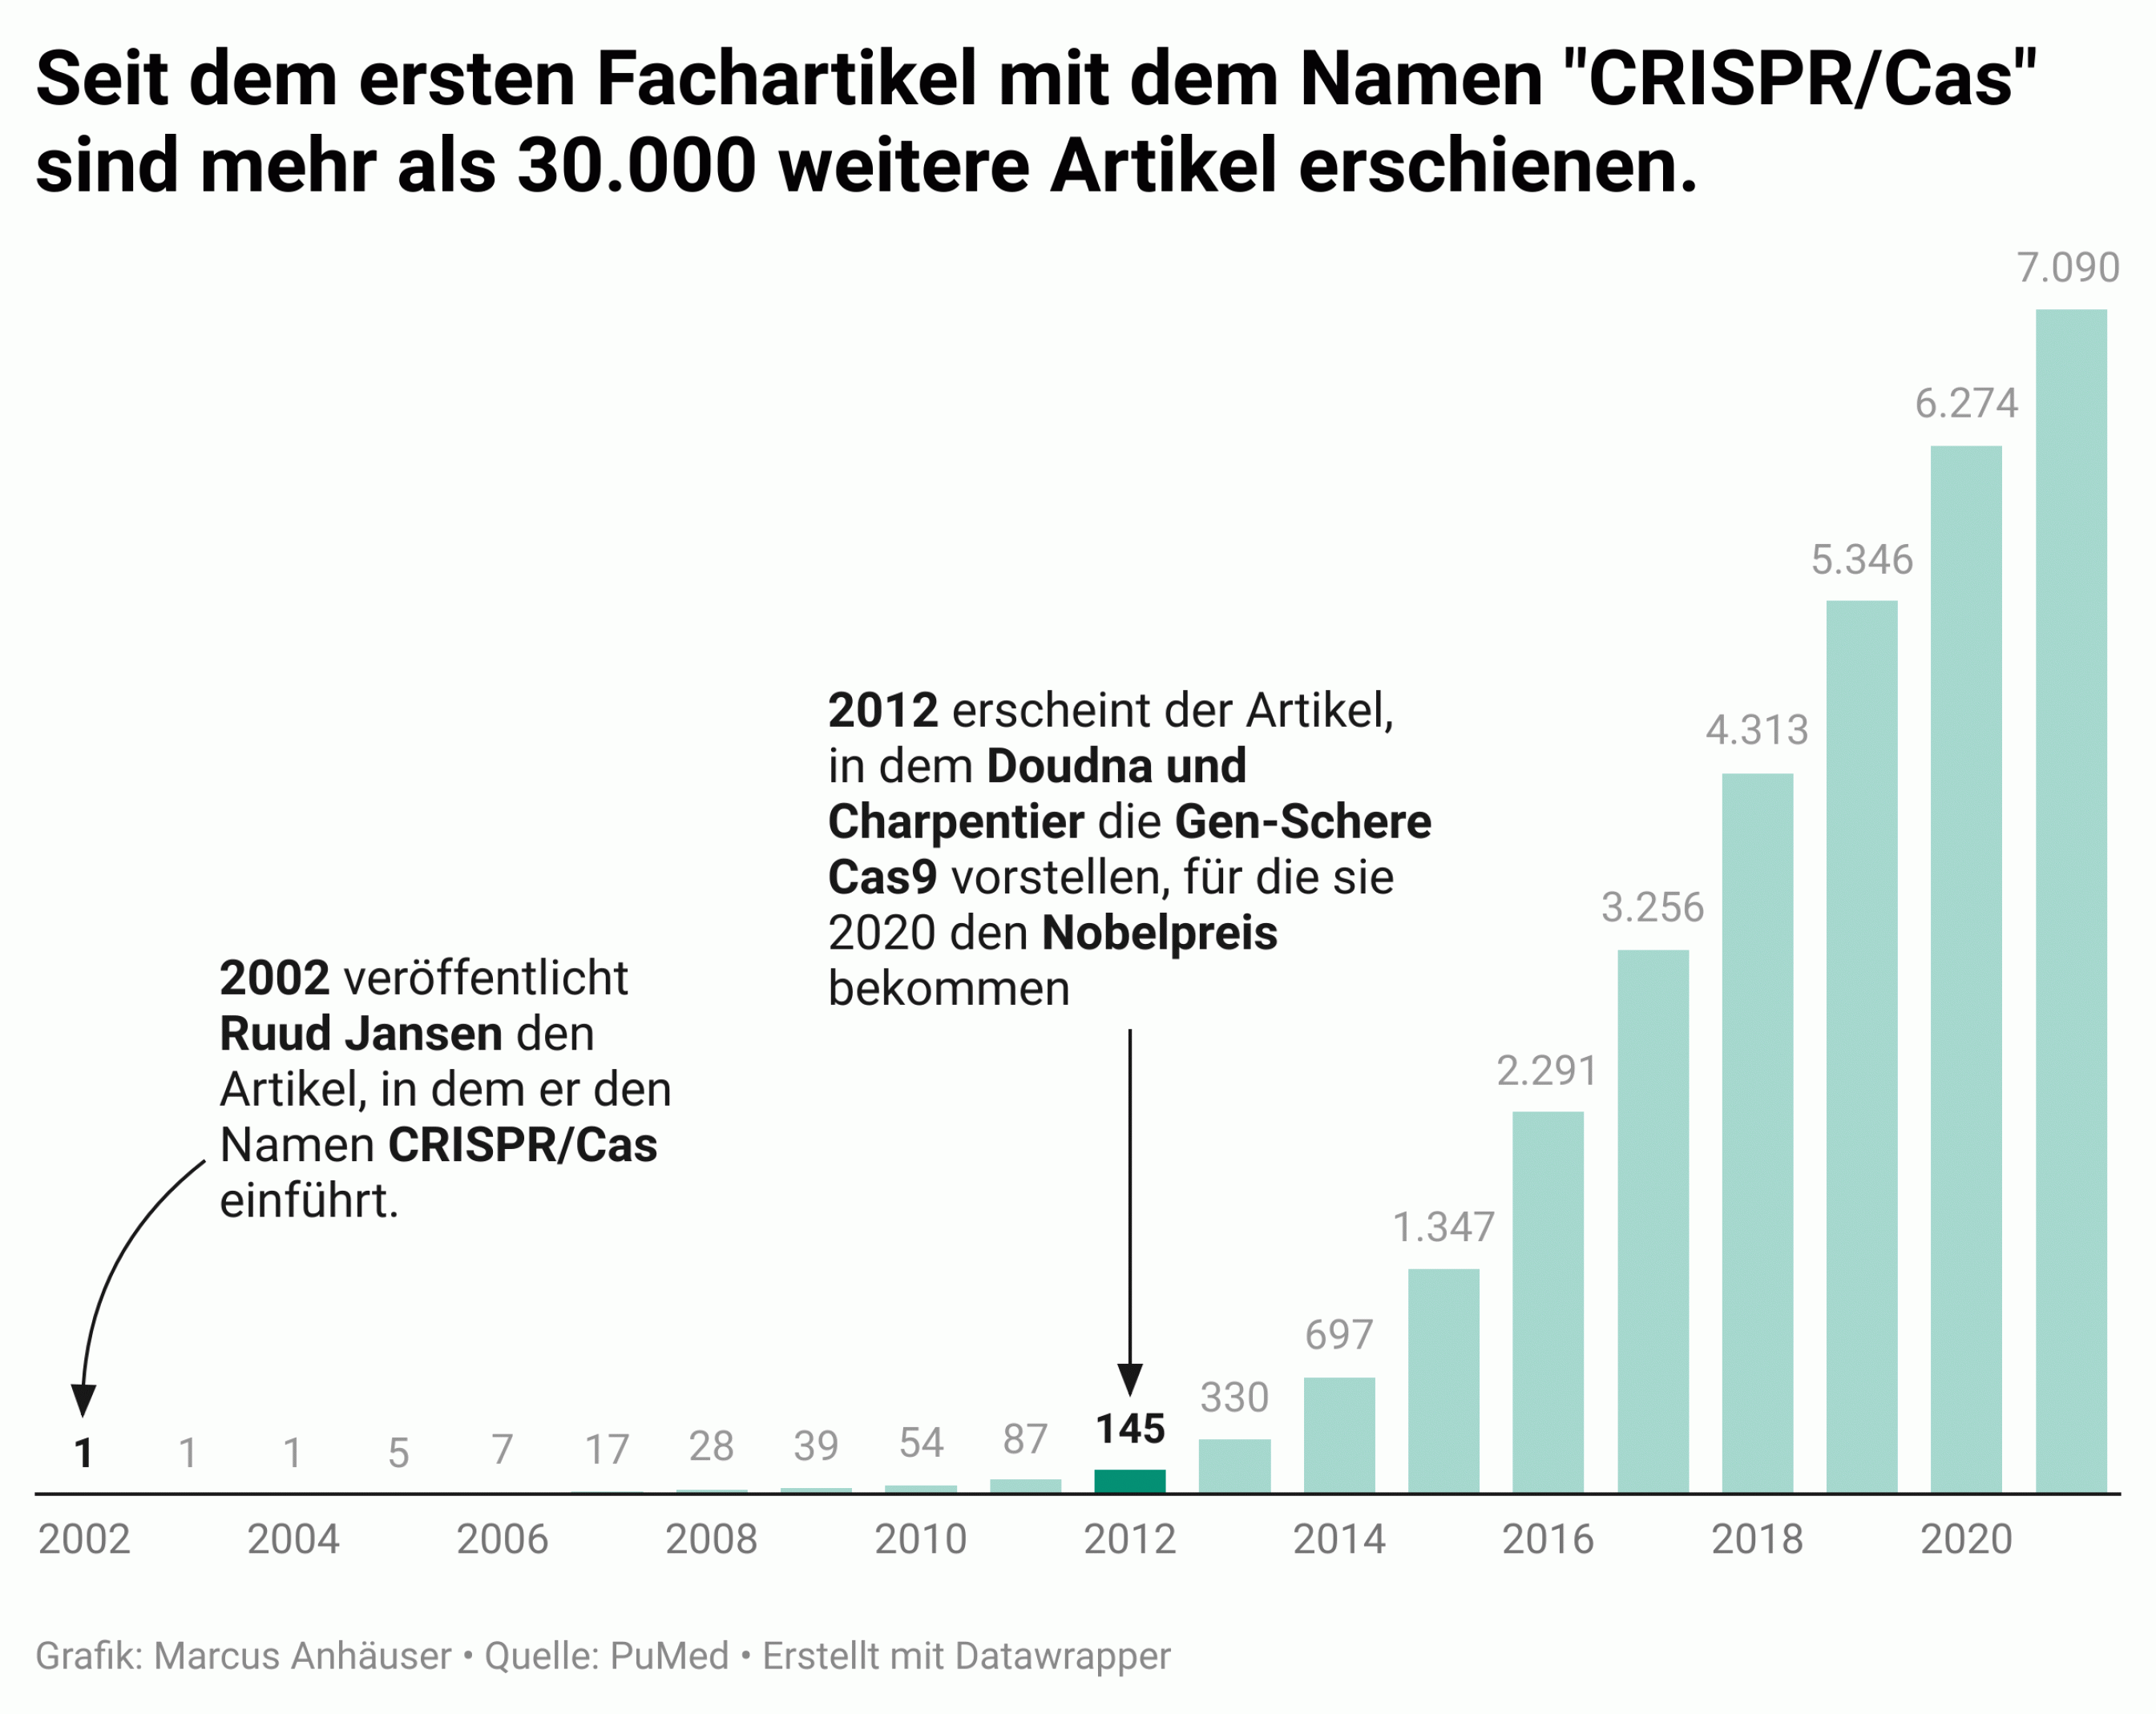 Die Säulengrafik zeigt die Zahl der Fachartikel in der Datenbank PubMed für den Begriff „CRISPR“ pro Jahr.  Im ersten Jahr erschien nur ein Artikel (der von Ruud Jansen). Im Jahr 2021 sind es über 7000.